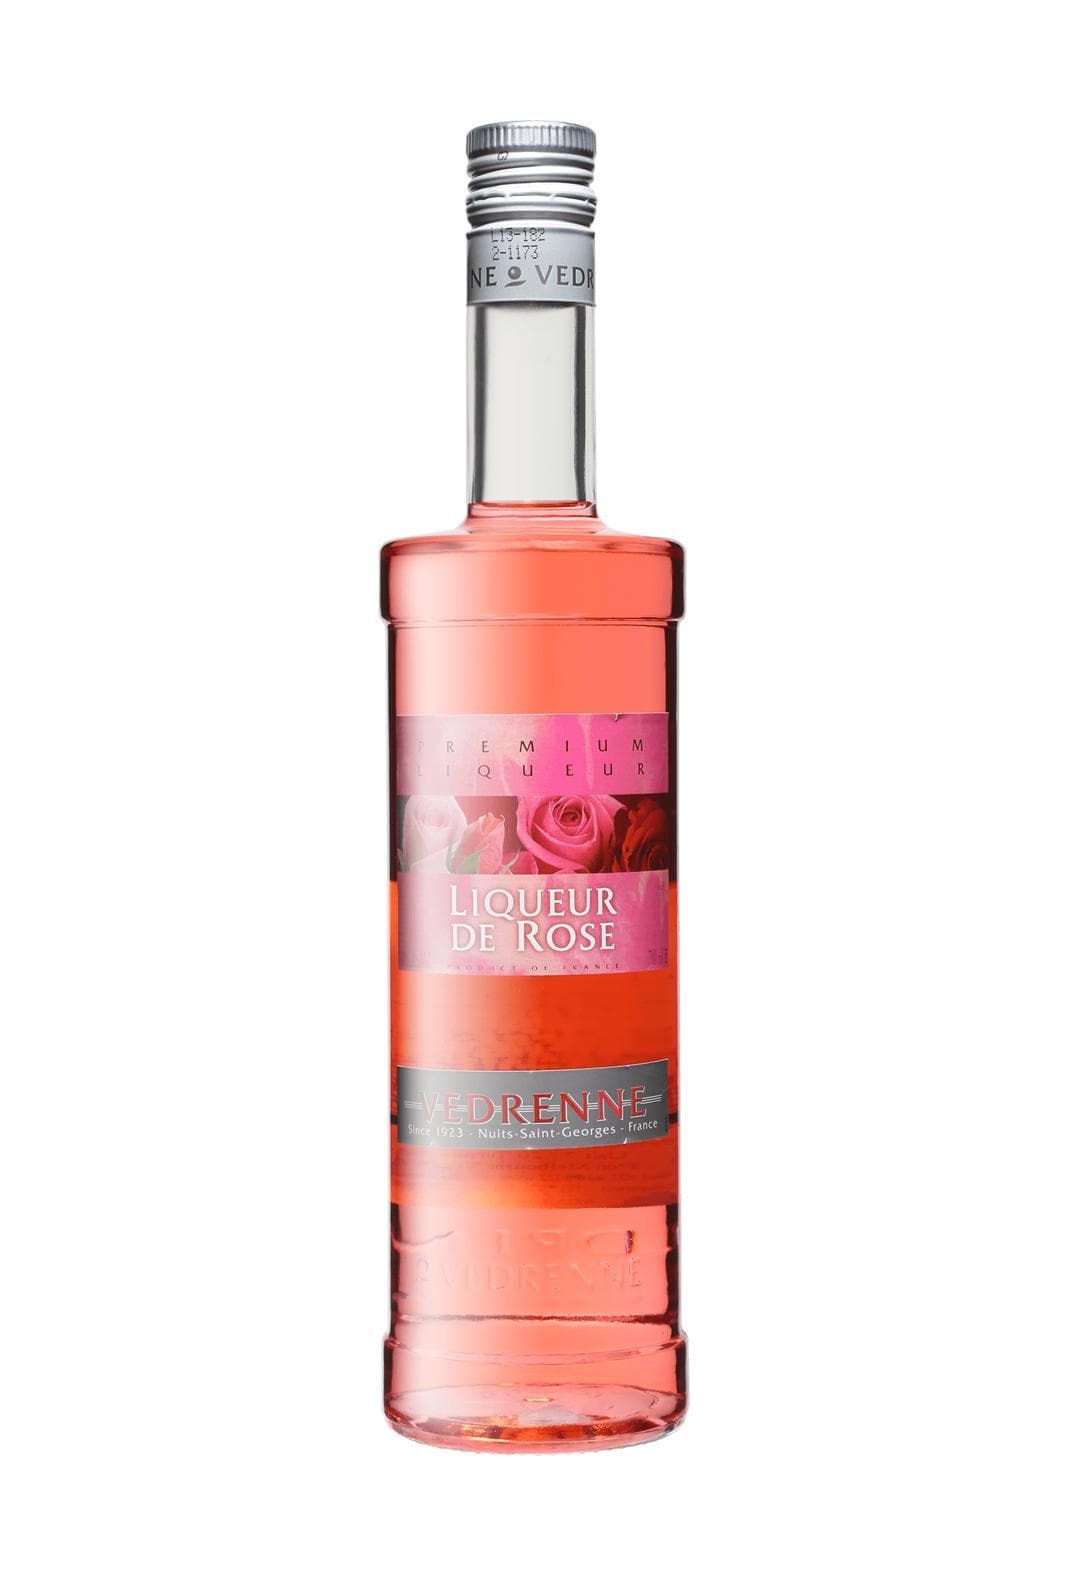 Vedrenne Liqueur de Rose 18% 700ml | Liqueurs | Shop online at Spirits of France